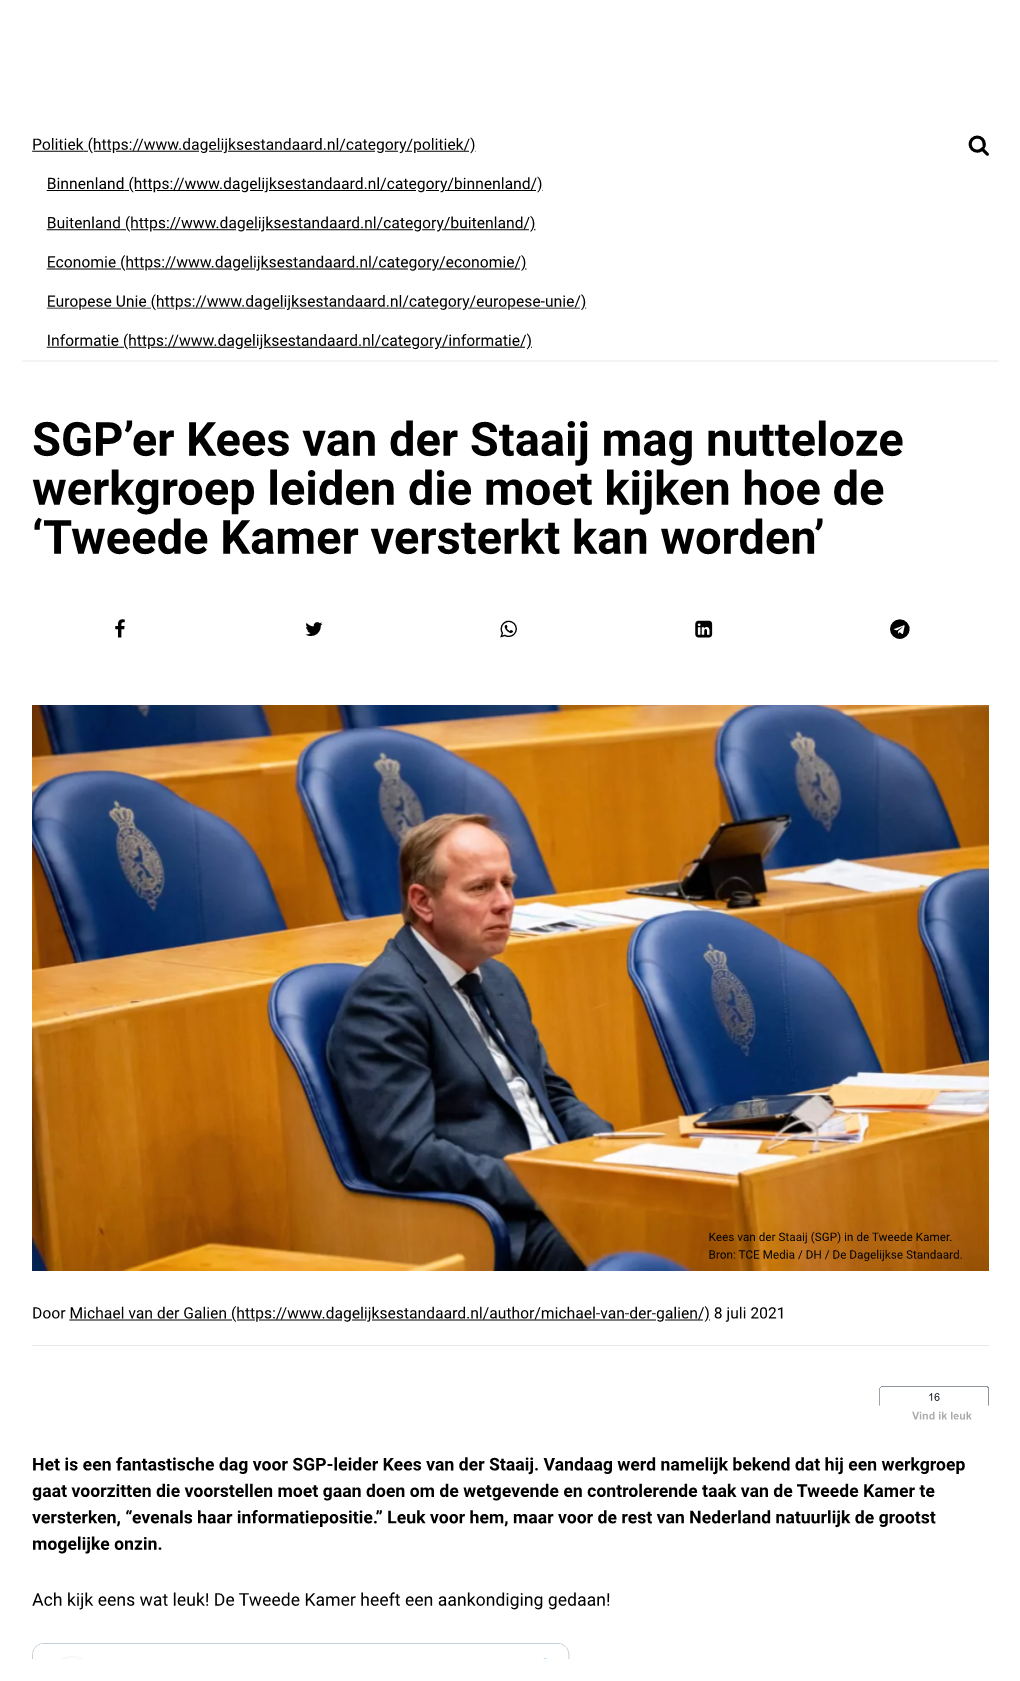 SGP'er Kees Van Der Staaij Mag Nutteloze Werkgroep Leiden Die